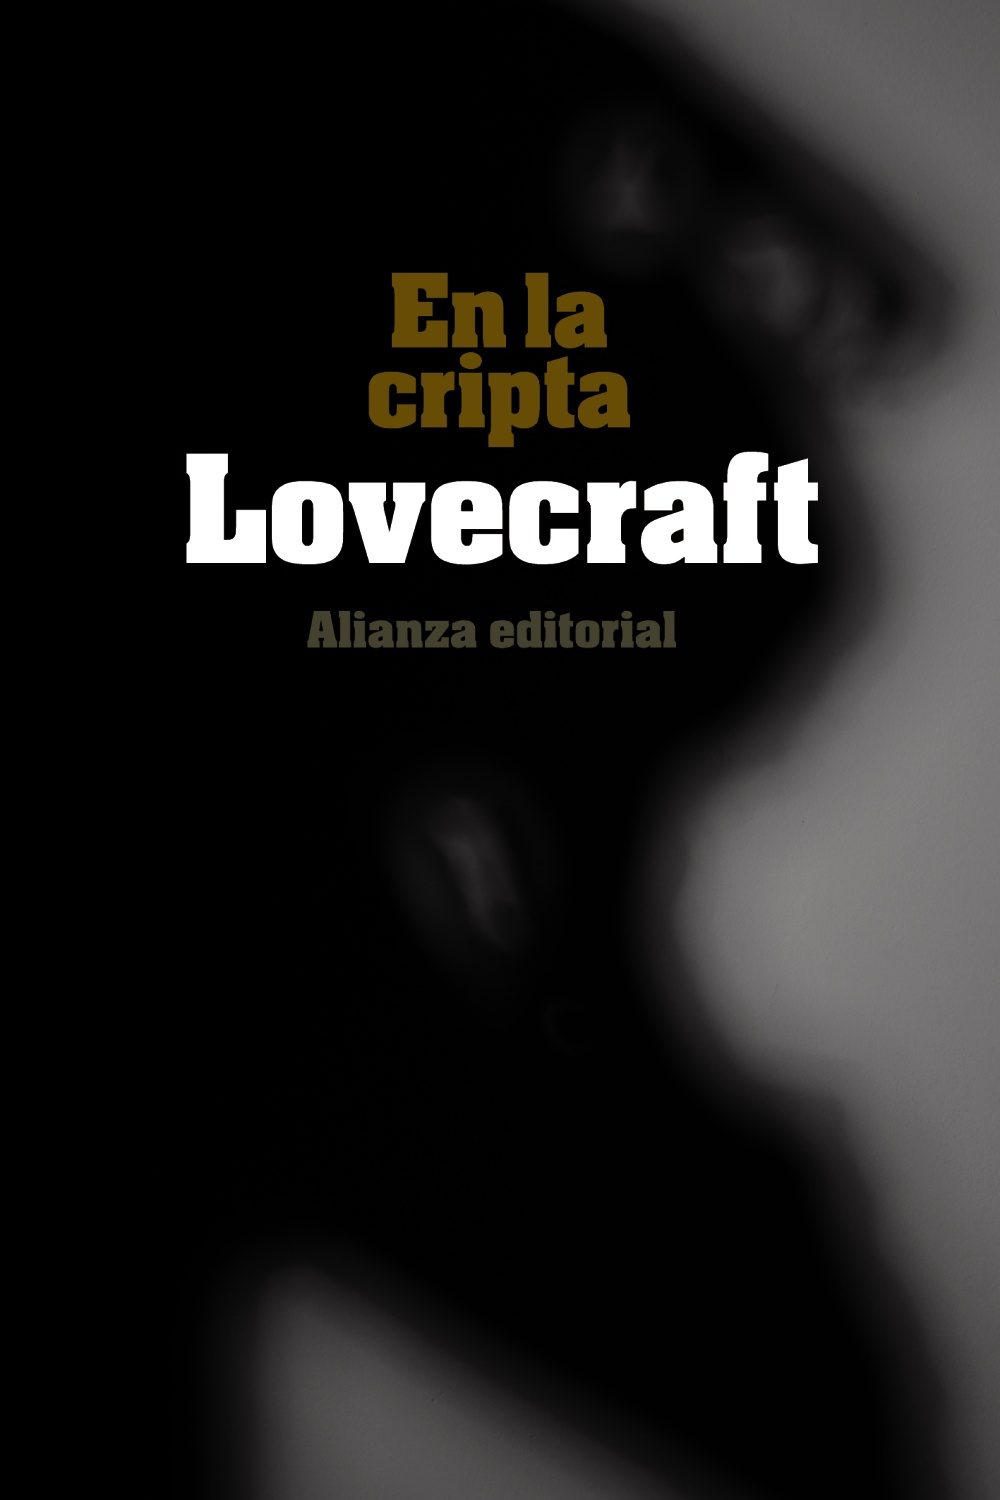 Lovecraft cripta.jpg